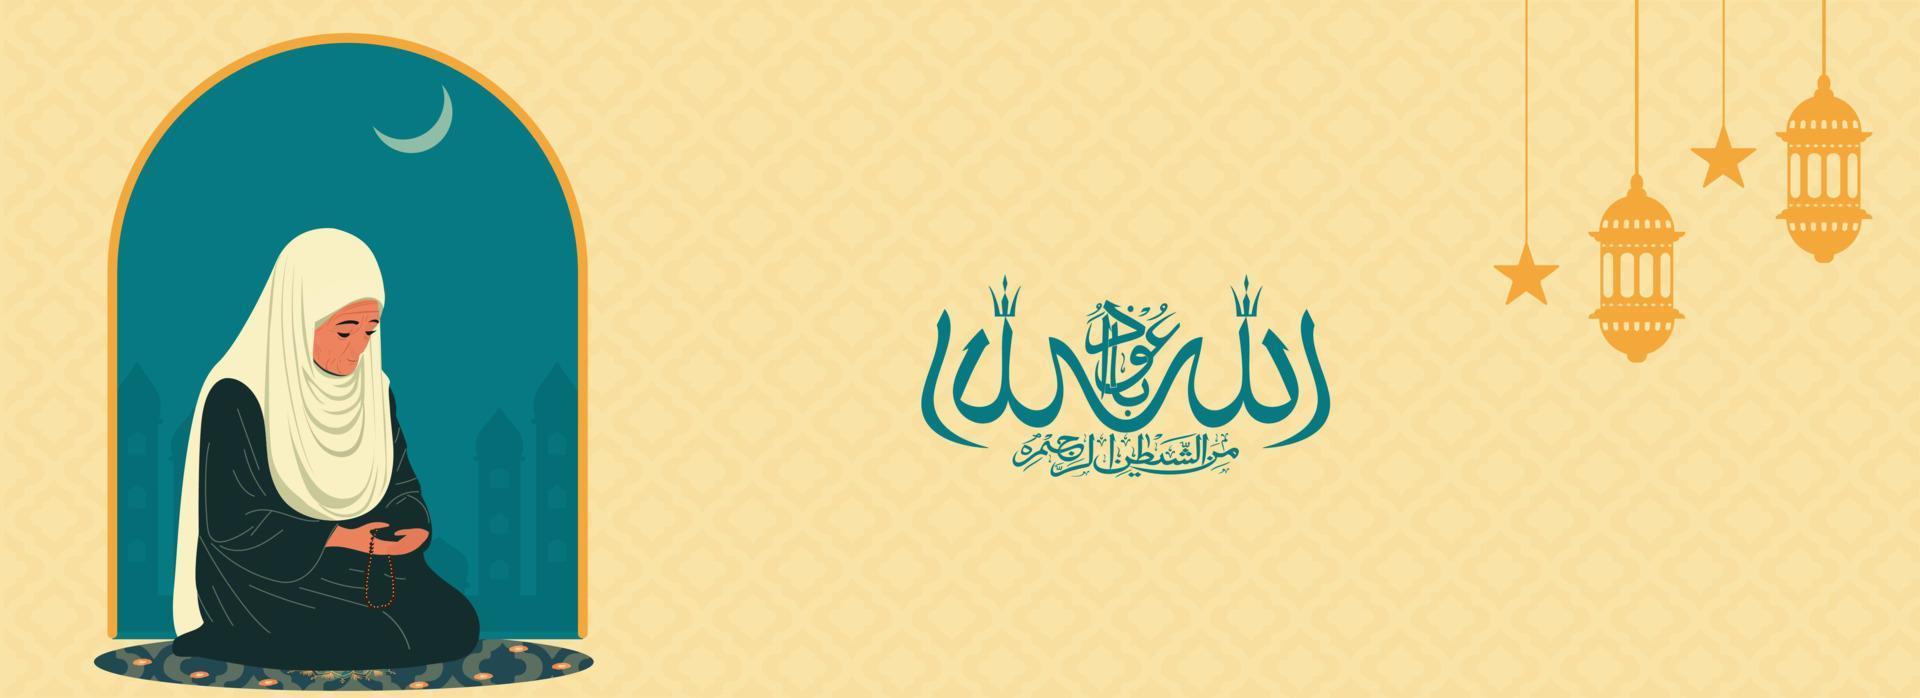 Arabisch Islamitisch schoonschrift van wens angst van Allah brengt intelligentie, eerlijkheid en liefde en ouderen moslim vrouw karakter bidden met tasbih Aan mat in nacht. vector